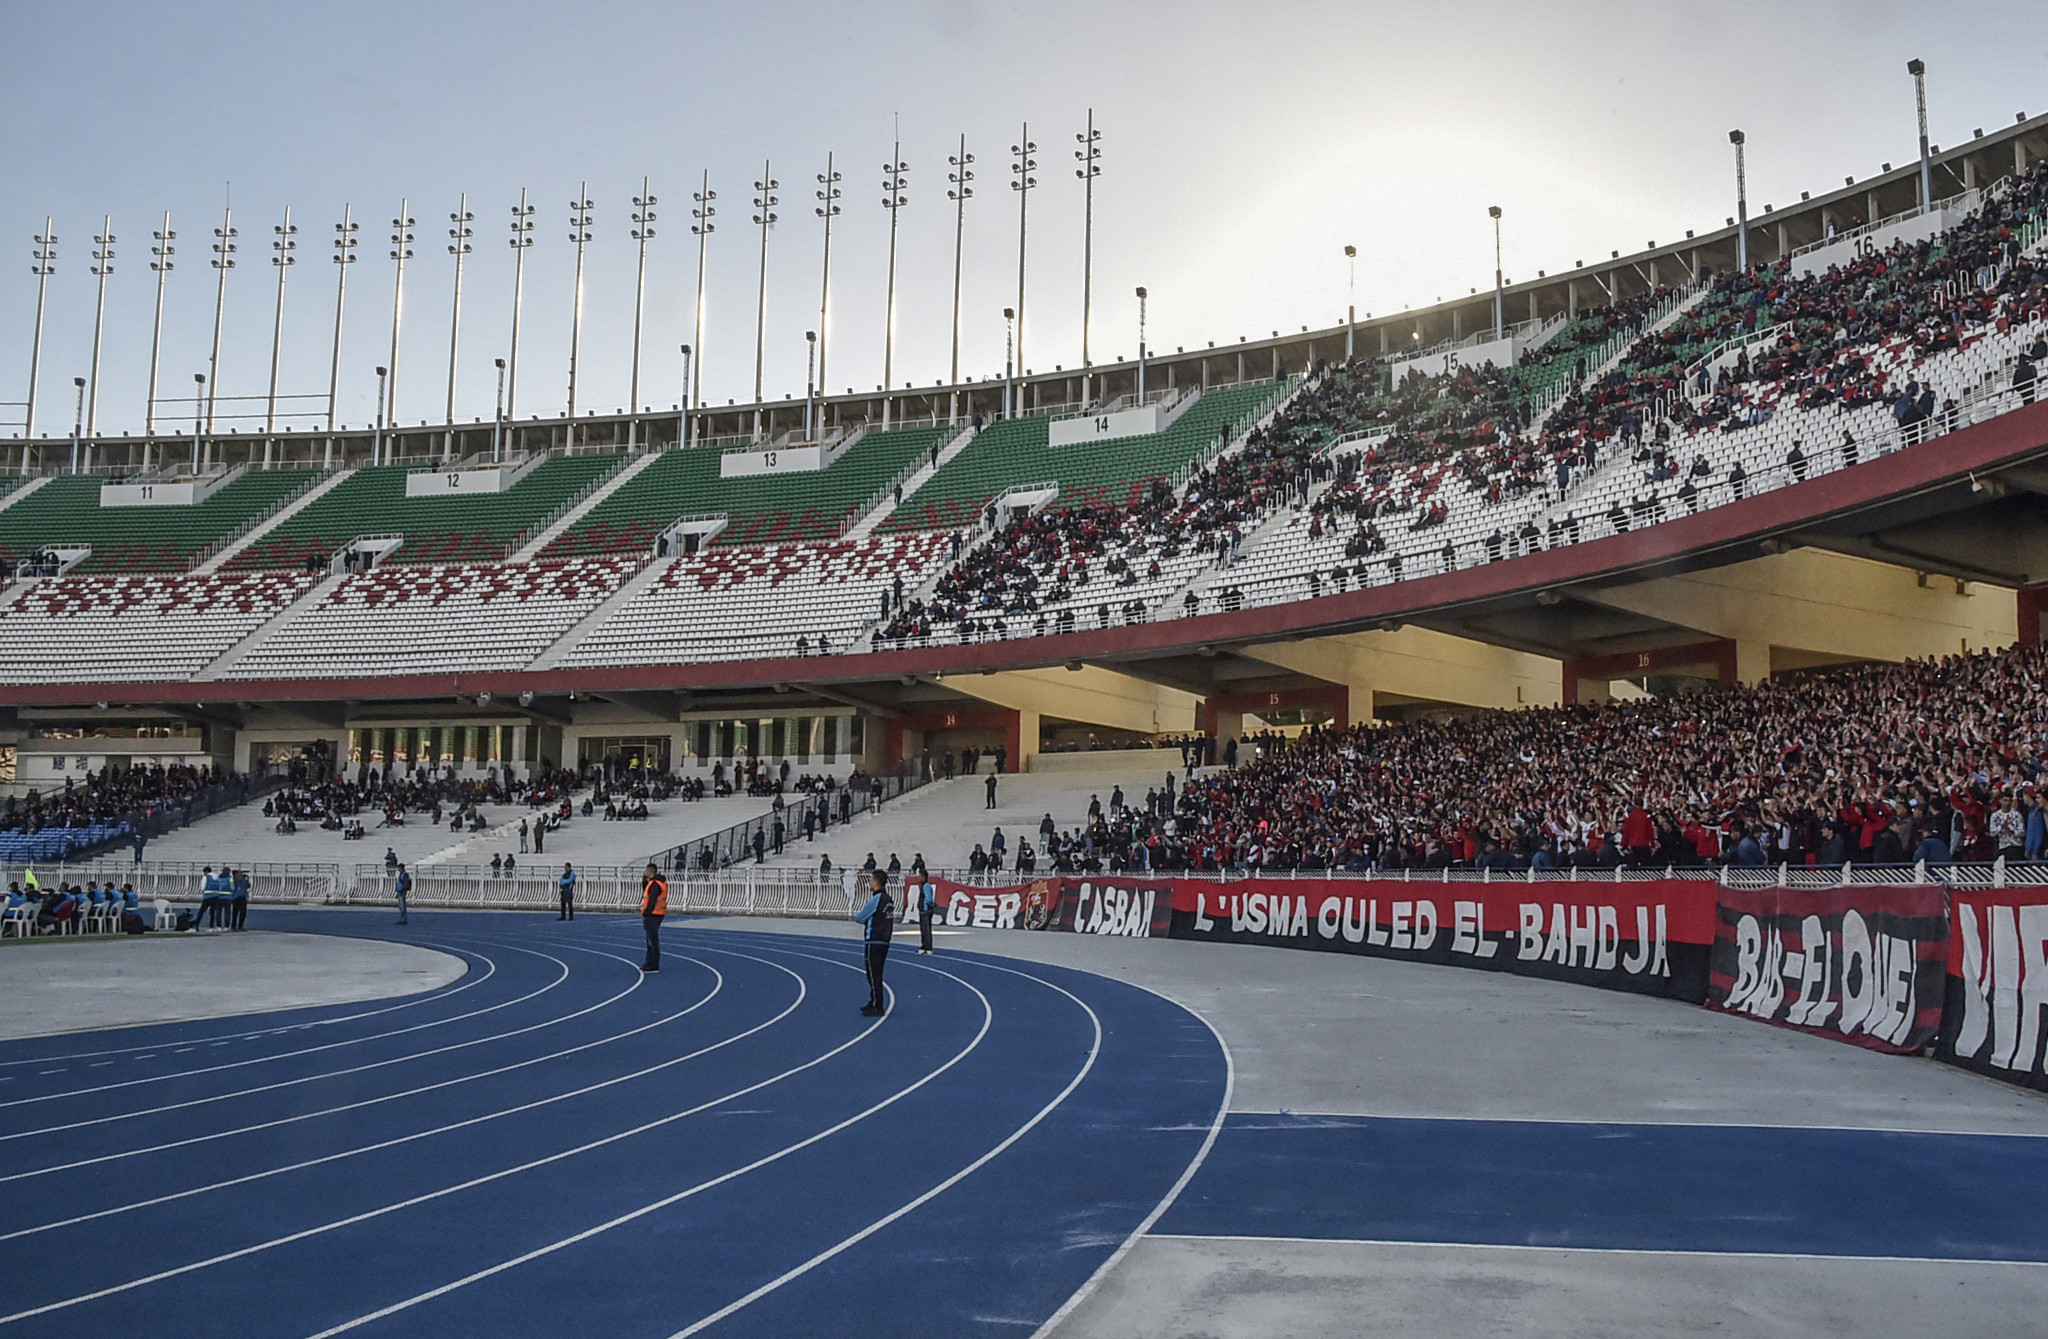 تتزامن الألعاب العربية الأولى منذ 12 عامًا مع عيد استقلال الجزائر